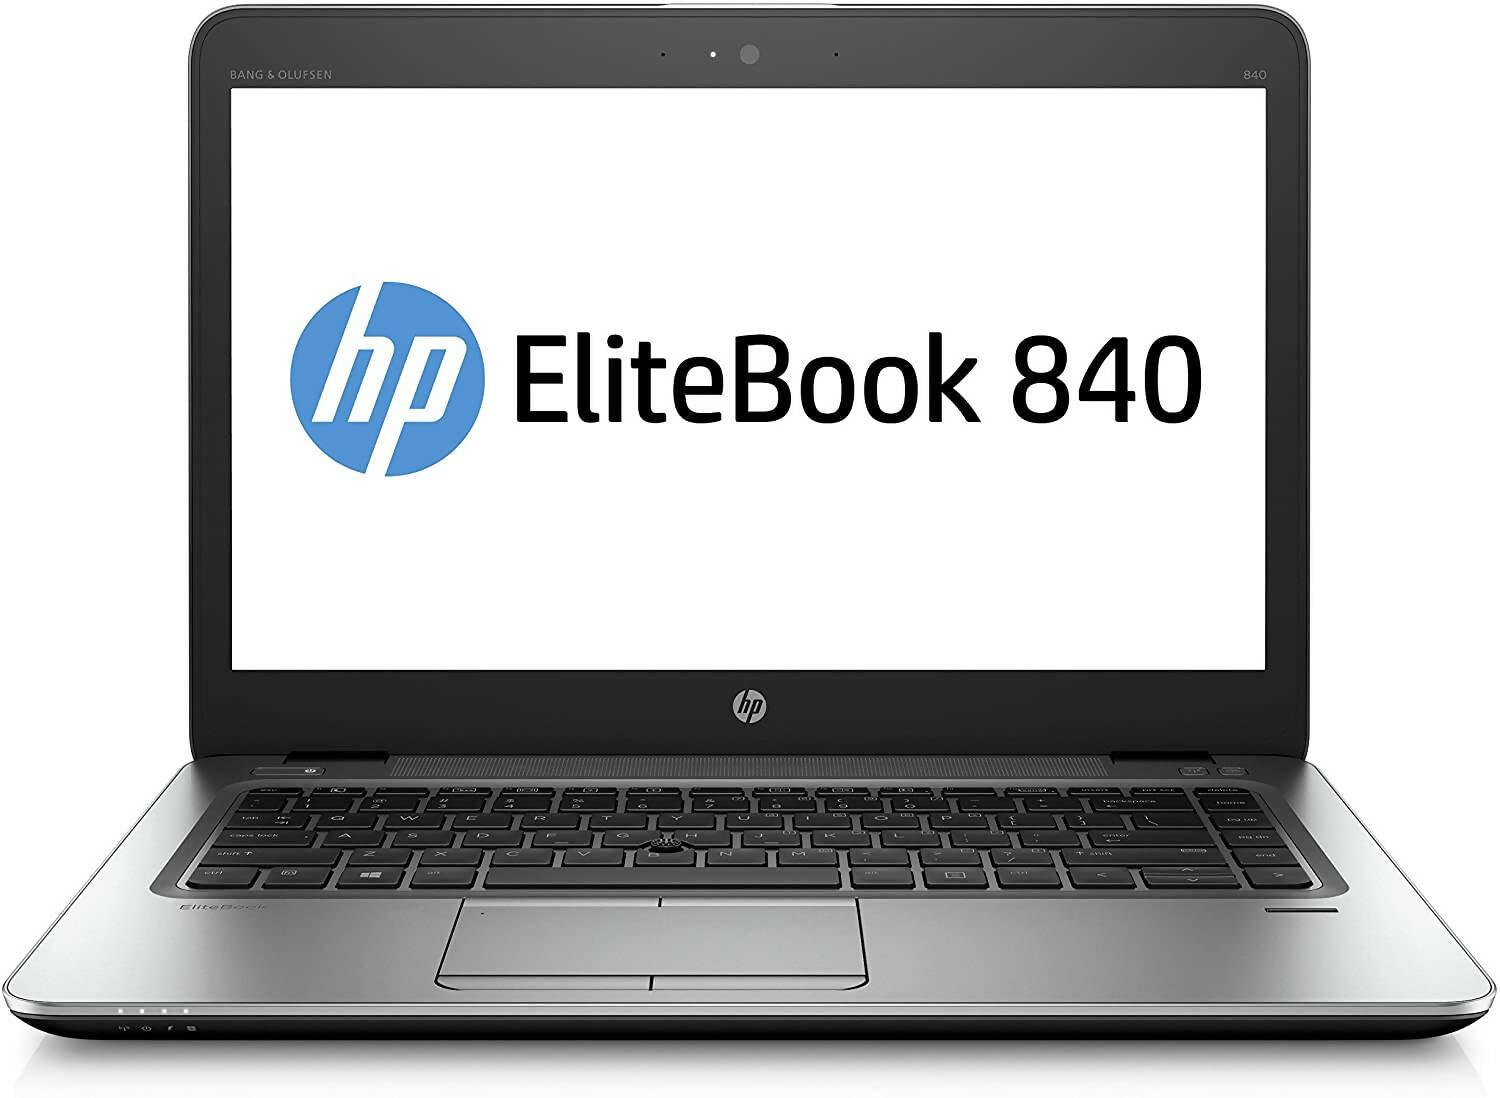 HP EliteBook 840 G3 - 14” FHD, Intel Core i7-6200U 2.4Ghz, 8GB DDR4, 500GB HDD, Bluetooth 4.2, Windows 10 Pro - ValueBox